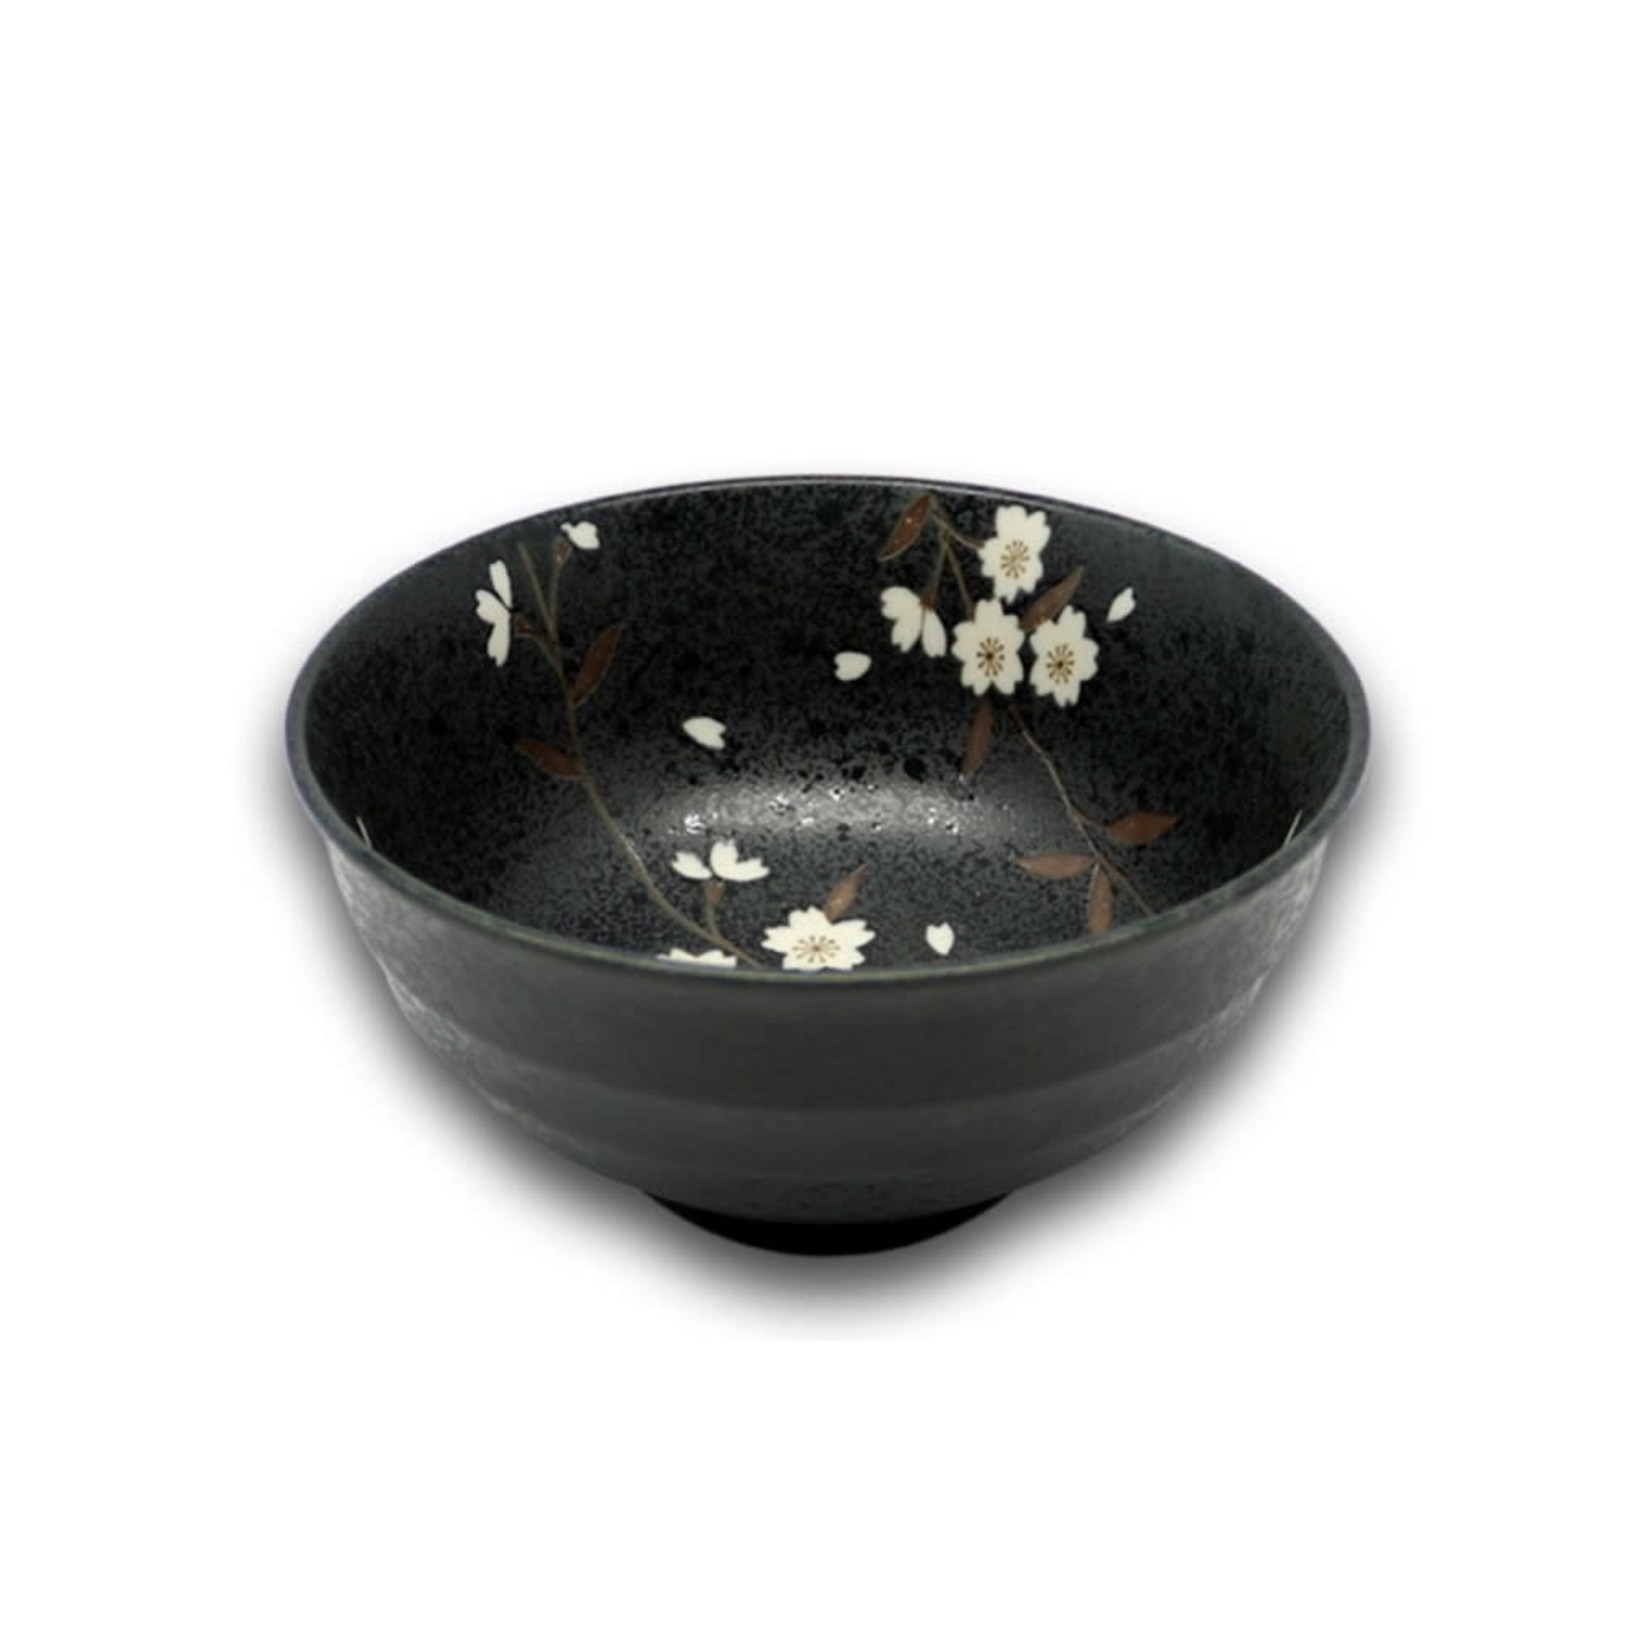 EMF EMF Japanese Porcelain Bowl Black Cherry Blossom